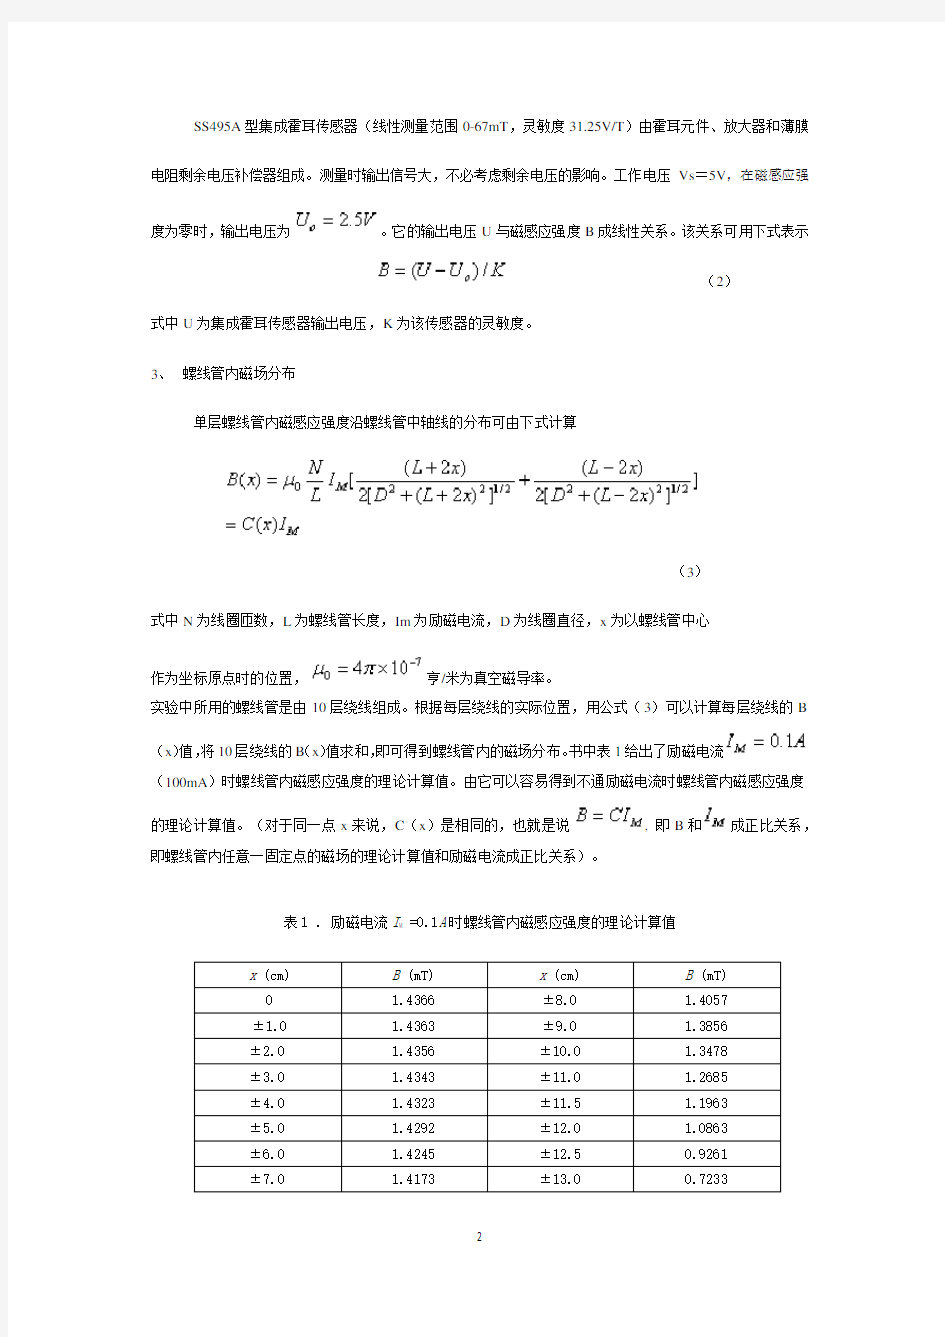 上海交通大学物理实验报告(大一下)集成霍尔传感器的特征测量与应用